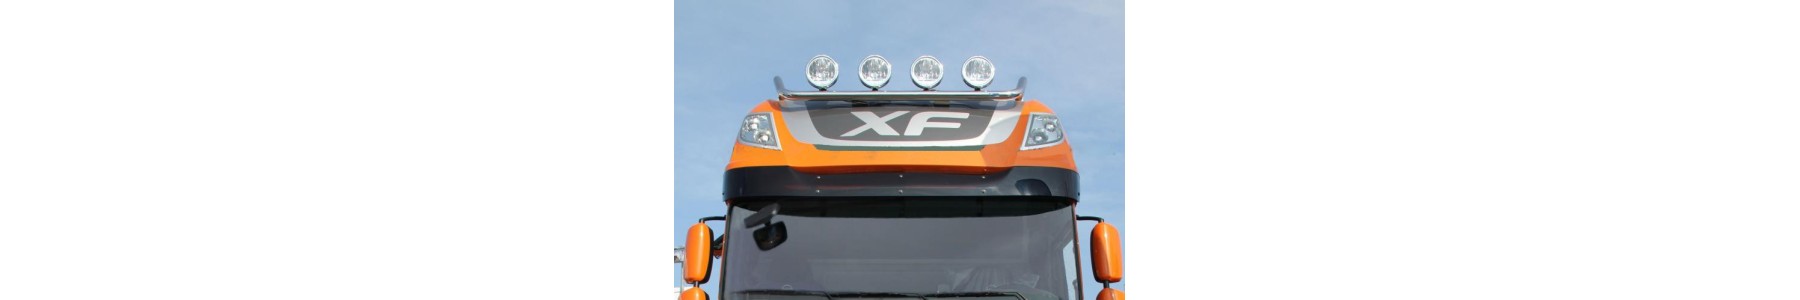 Rampe de toit pour votre camion DAF XF EURO 6.  22H22 Vente accessoires tuning poids lourd